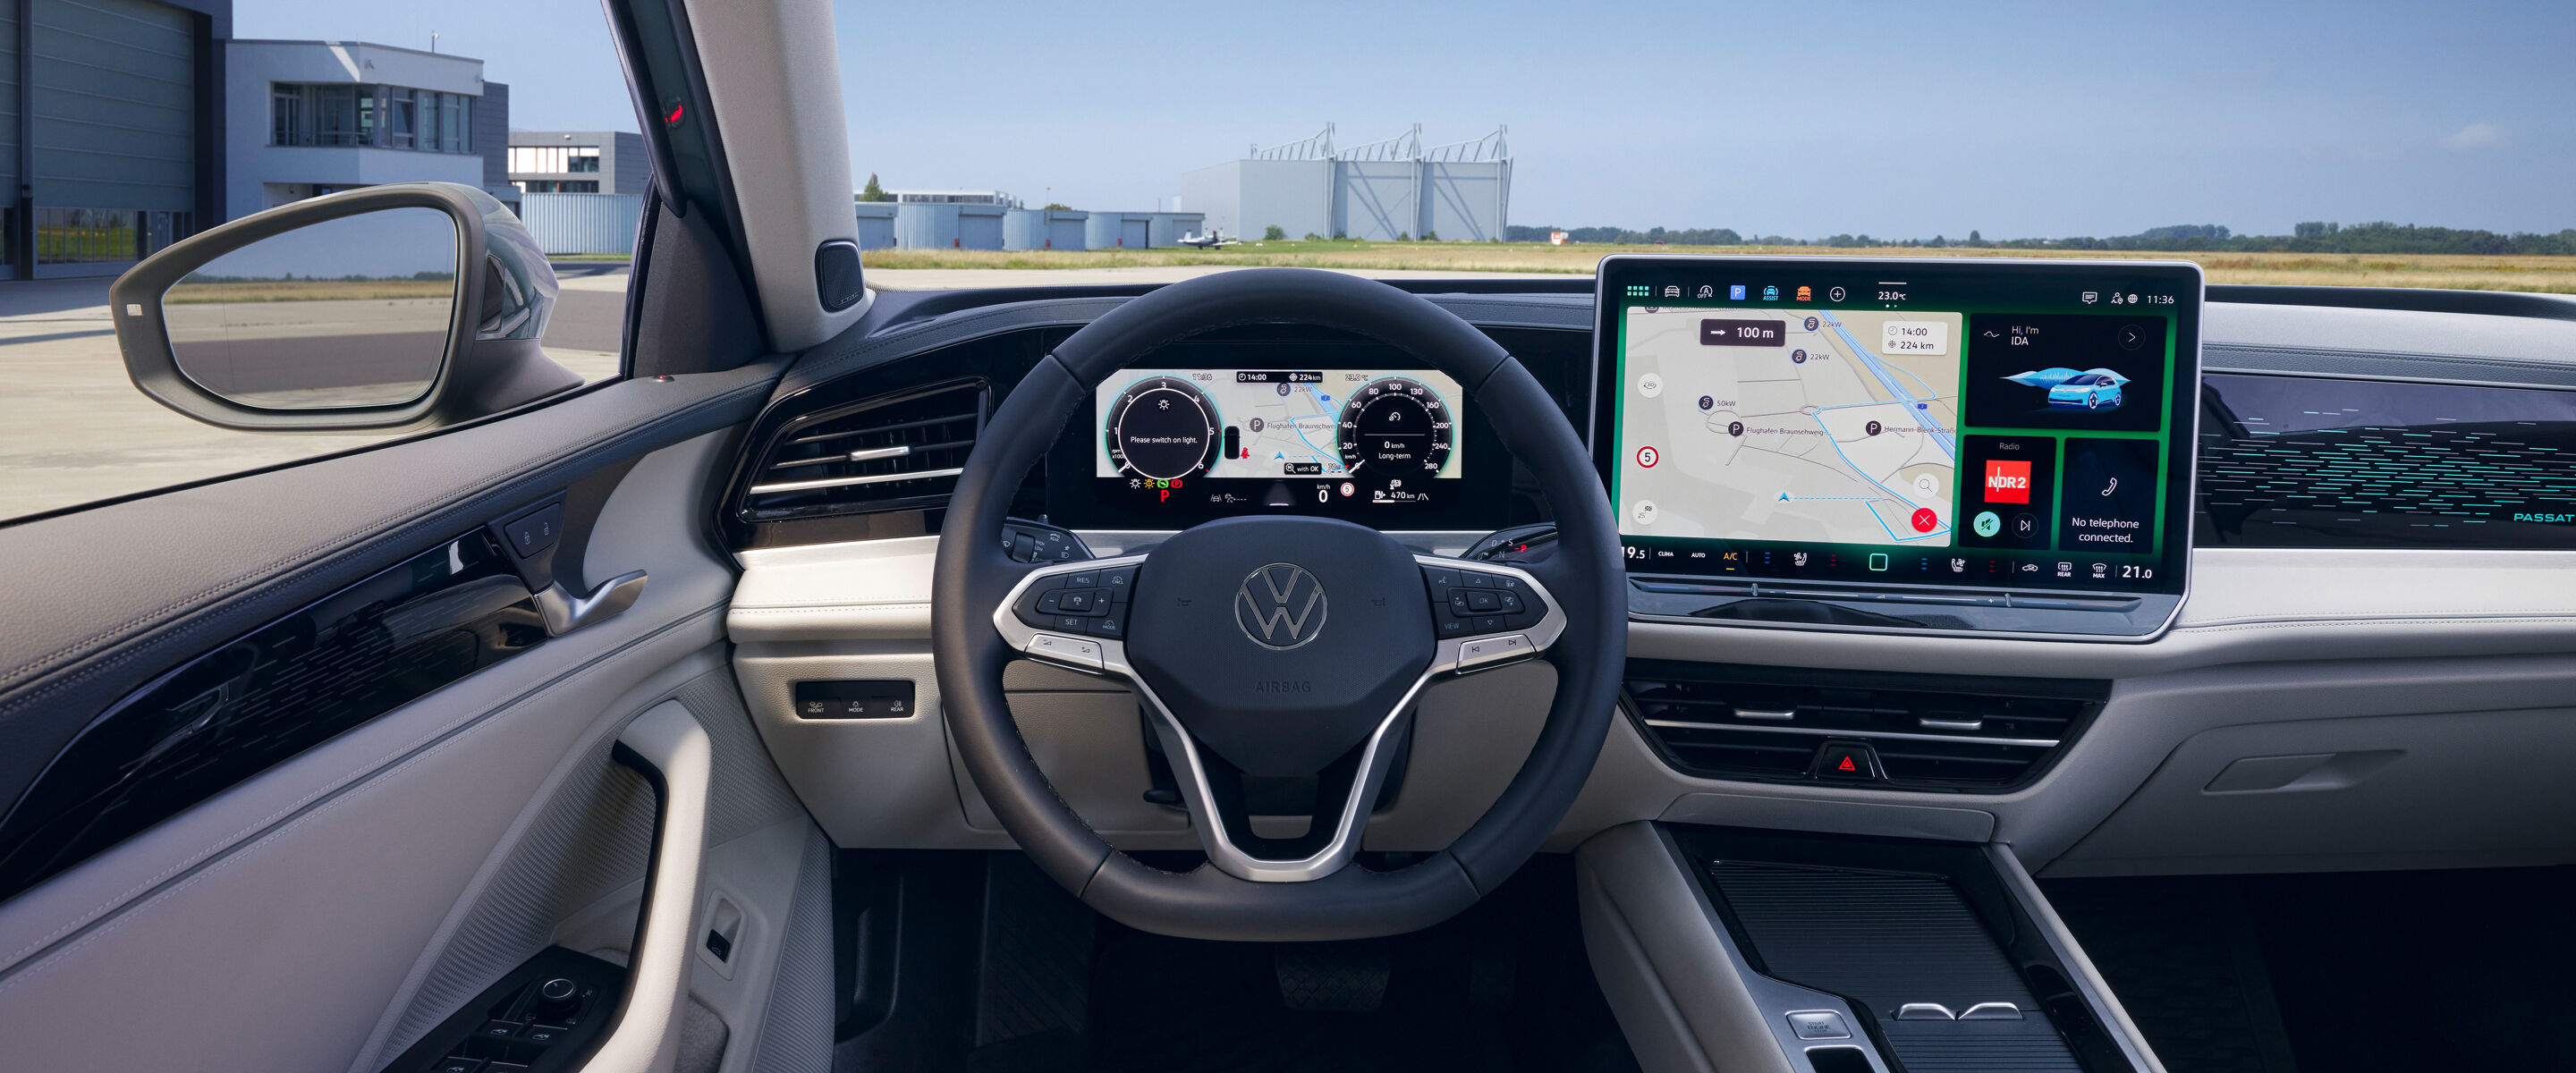 Het interieur van de nieuwe Volkswagen Passat en Tiguan zorgt voor een innovatieve premium beleving